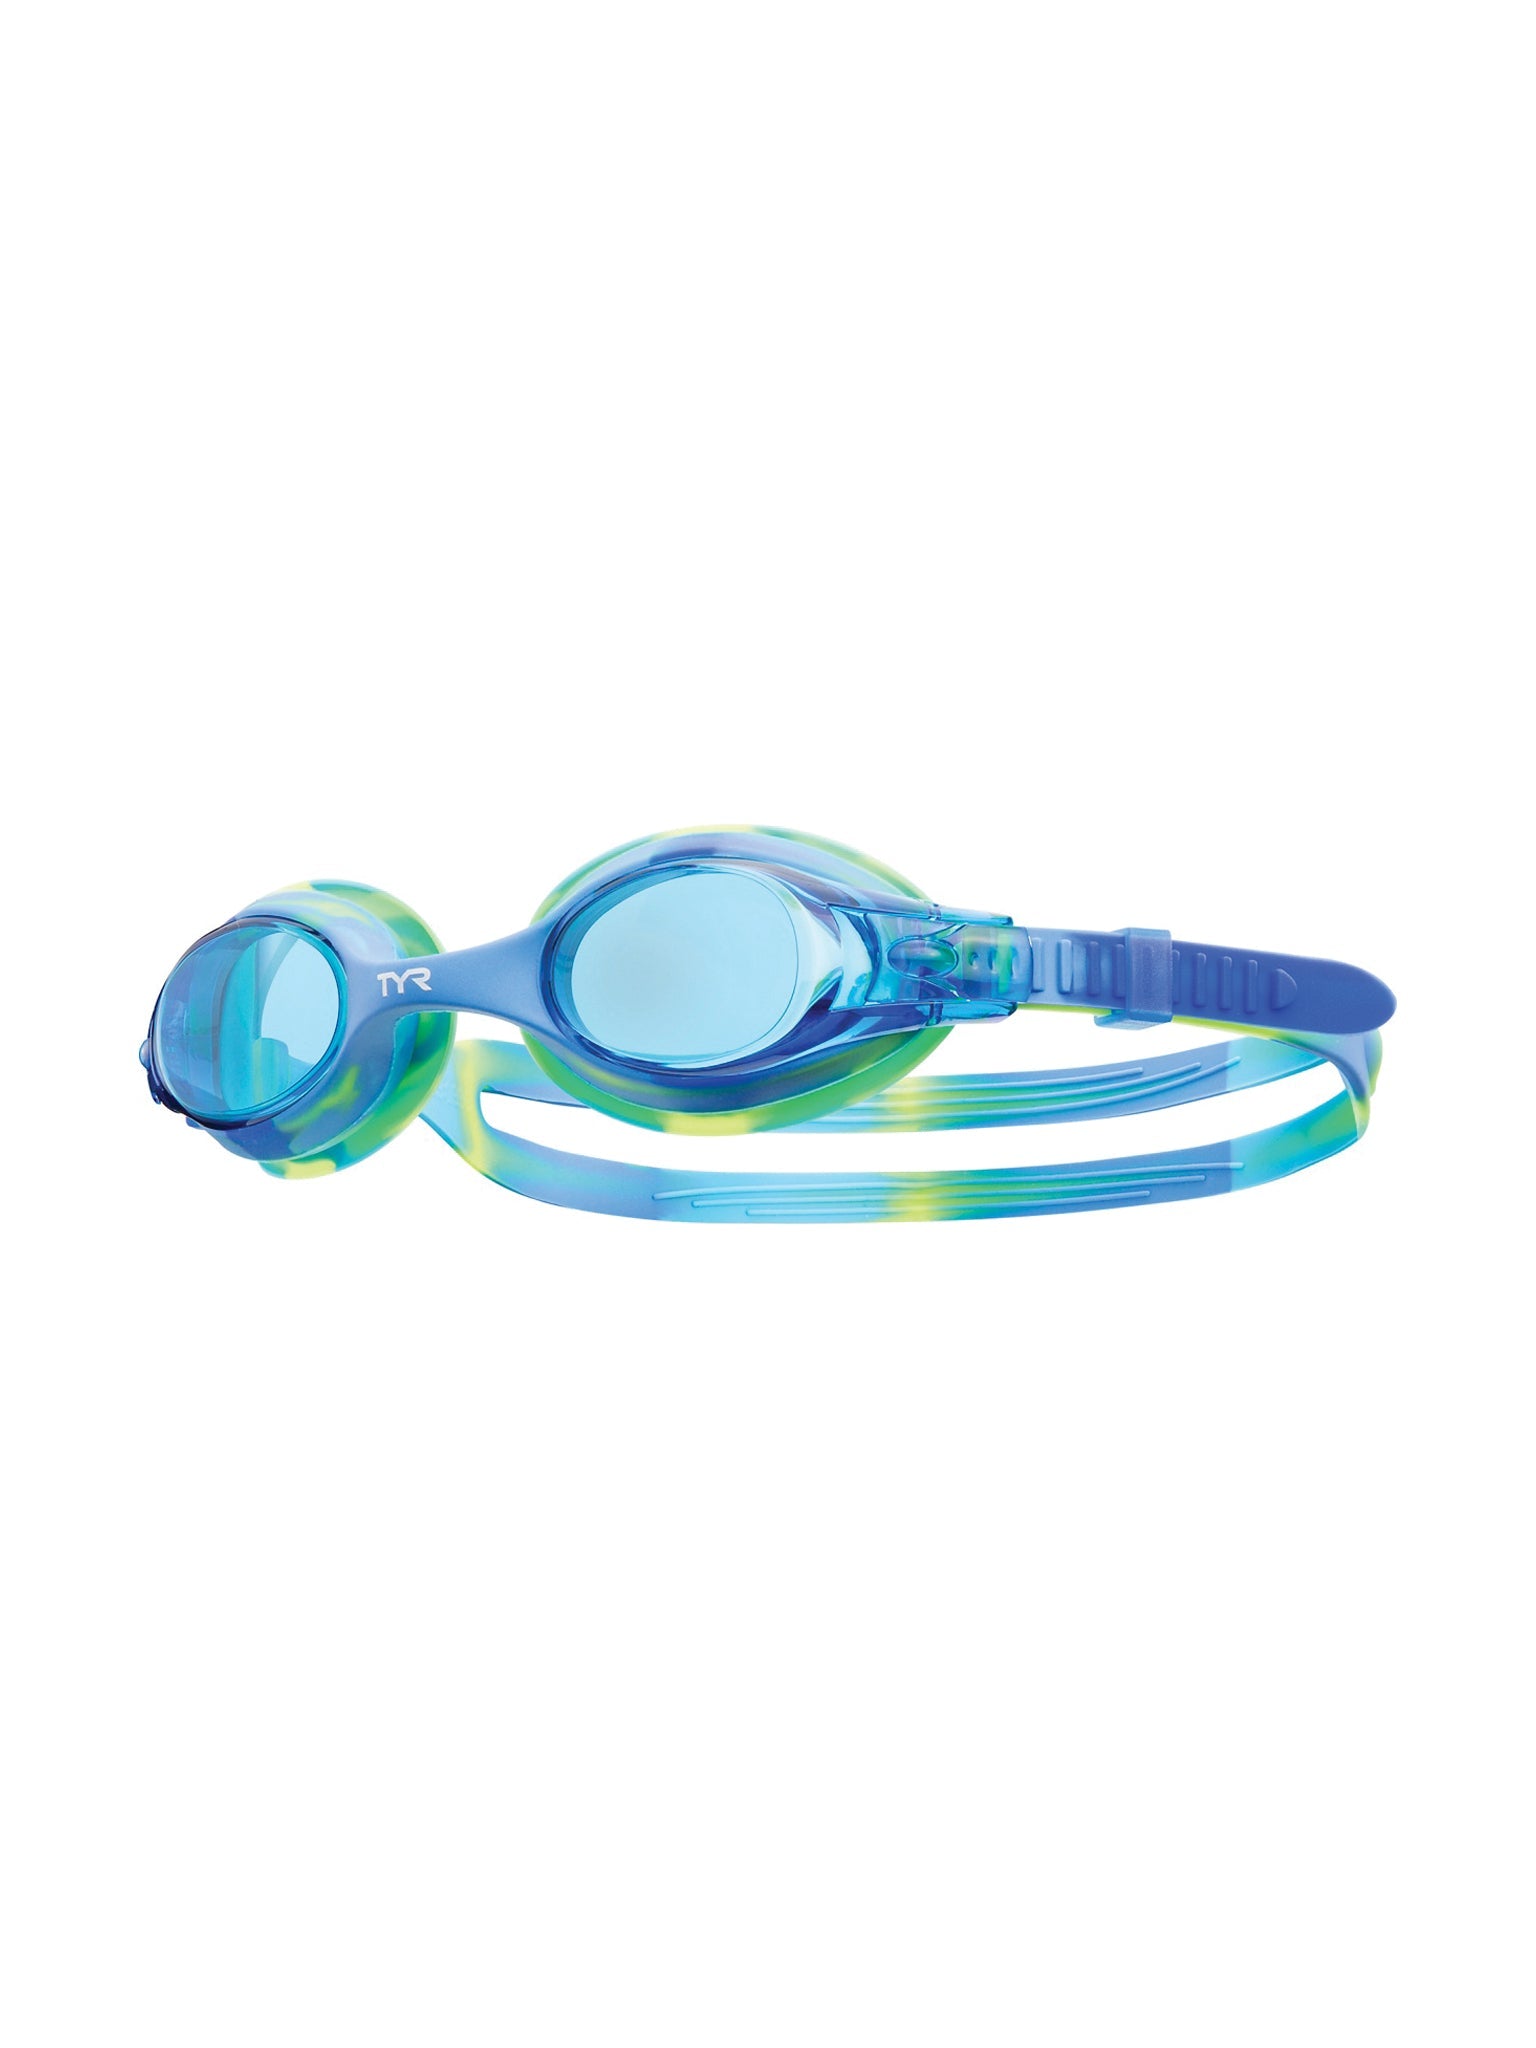 Lunettes de natation Swimple Tie-Dye pour enfants - Vert/Bleu